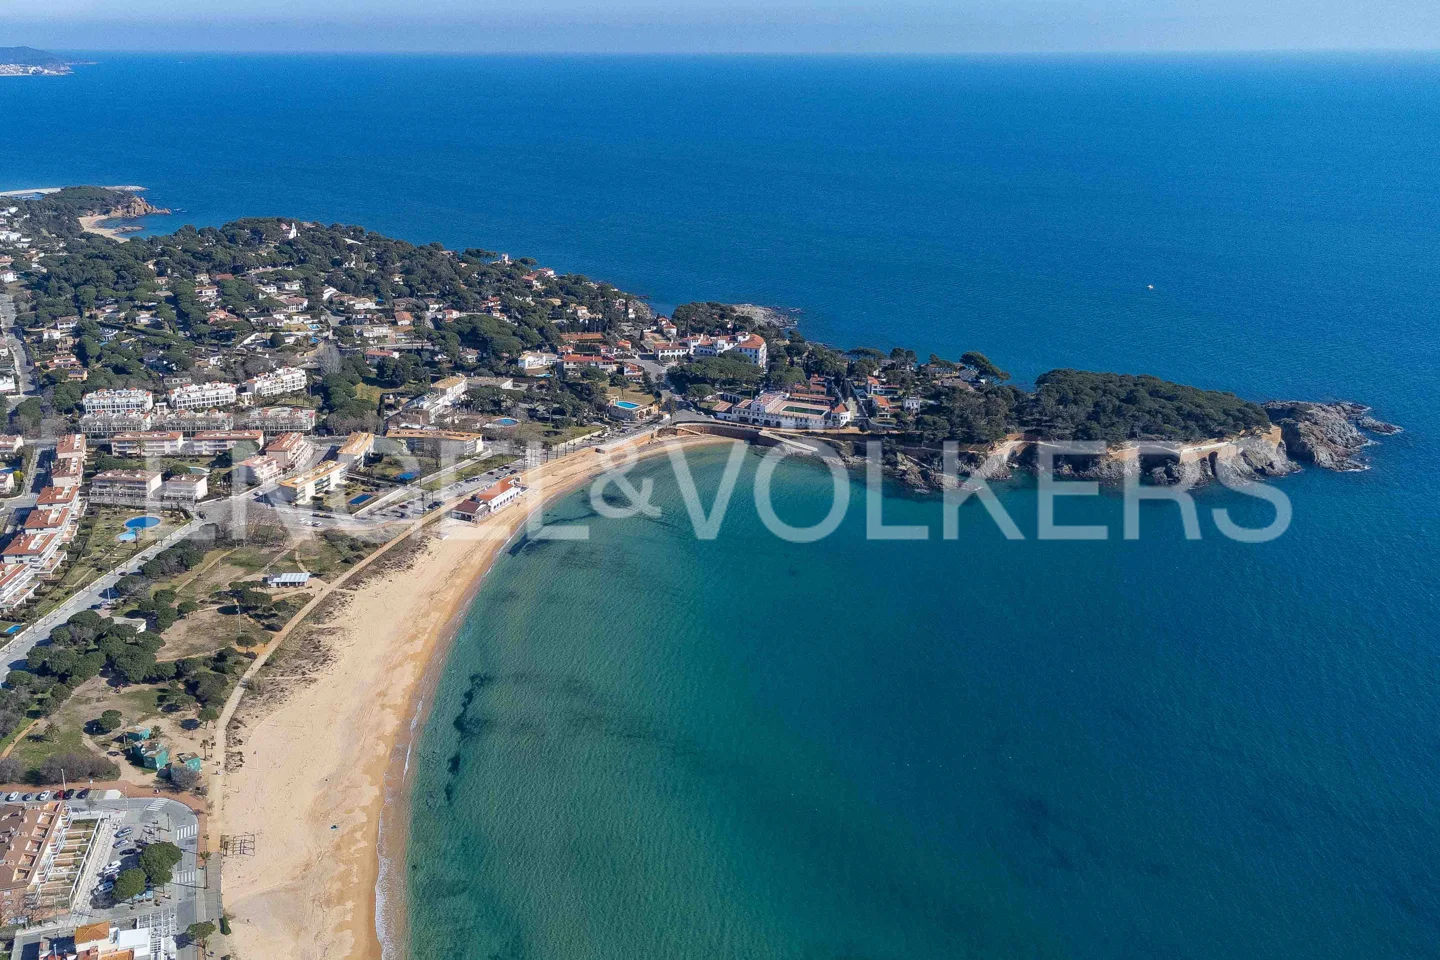 Exclusiva villa "off-market" con vista al mar